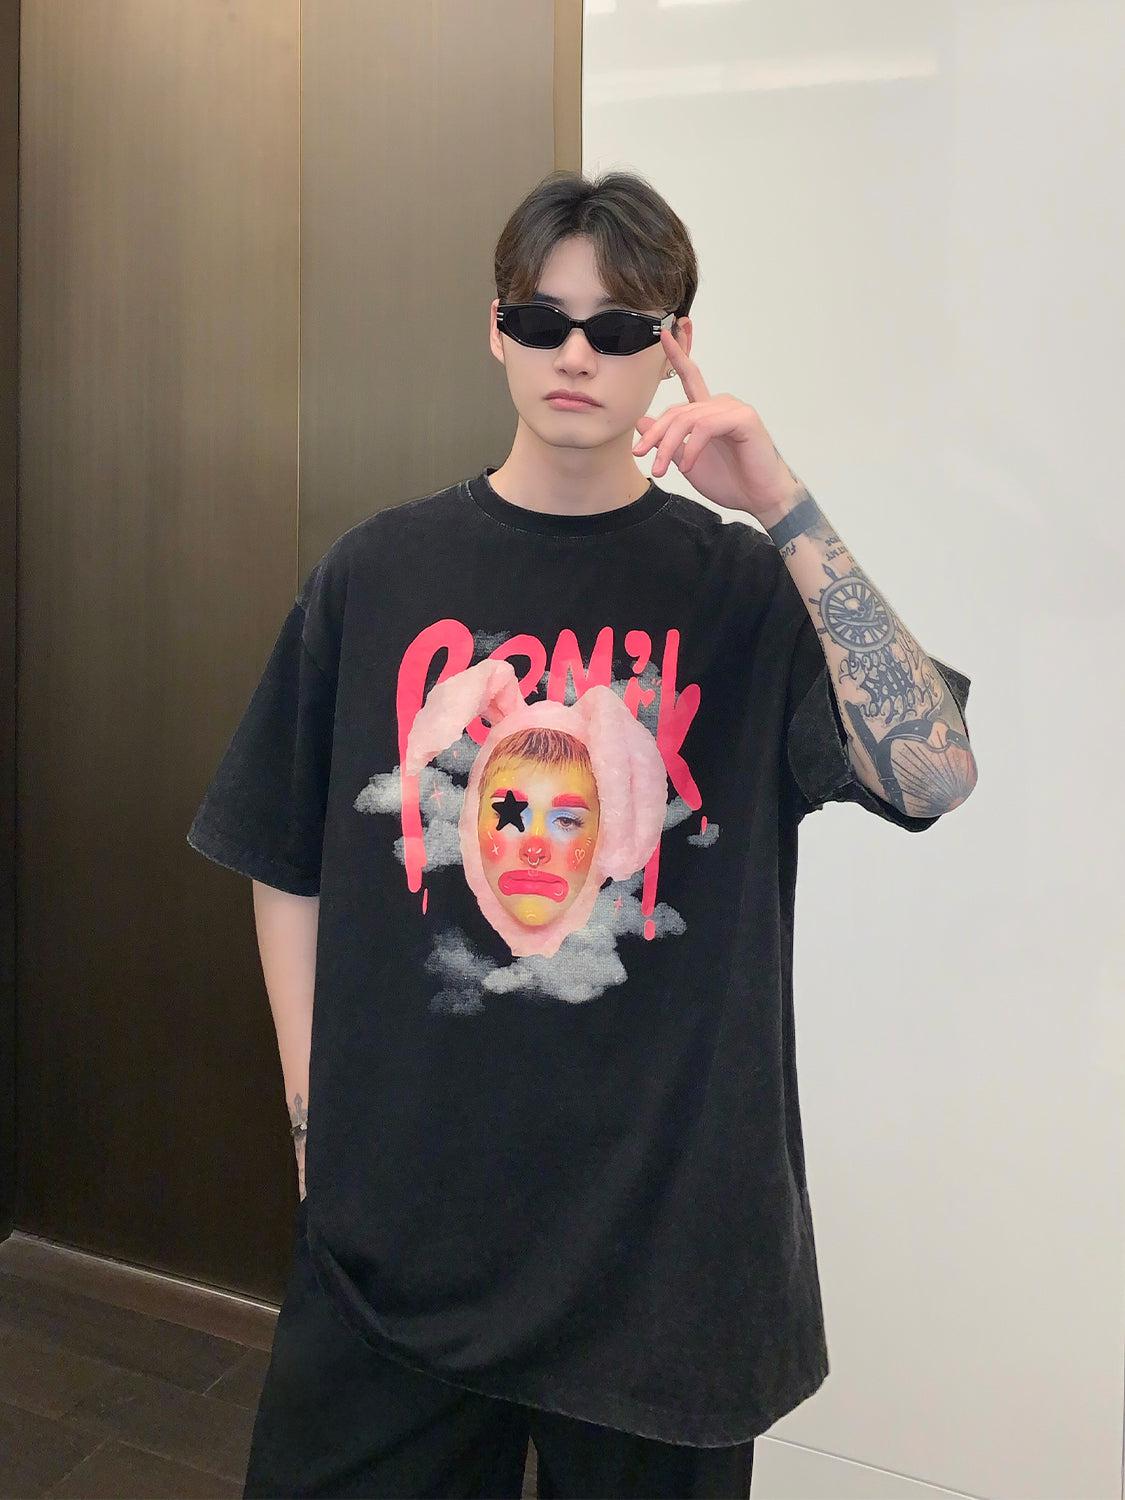 Clown Graphic T-shirt – The Korean Fashion